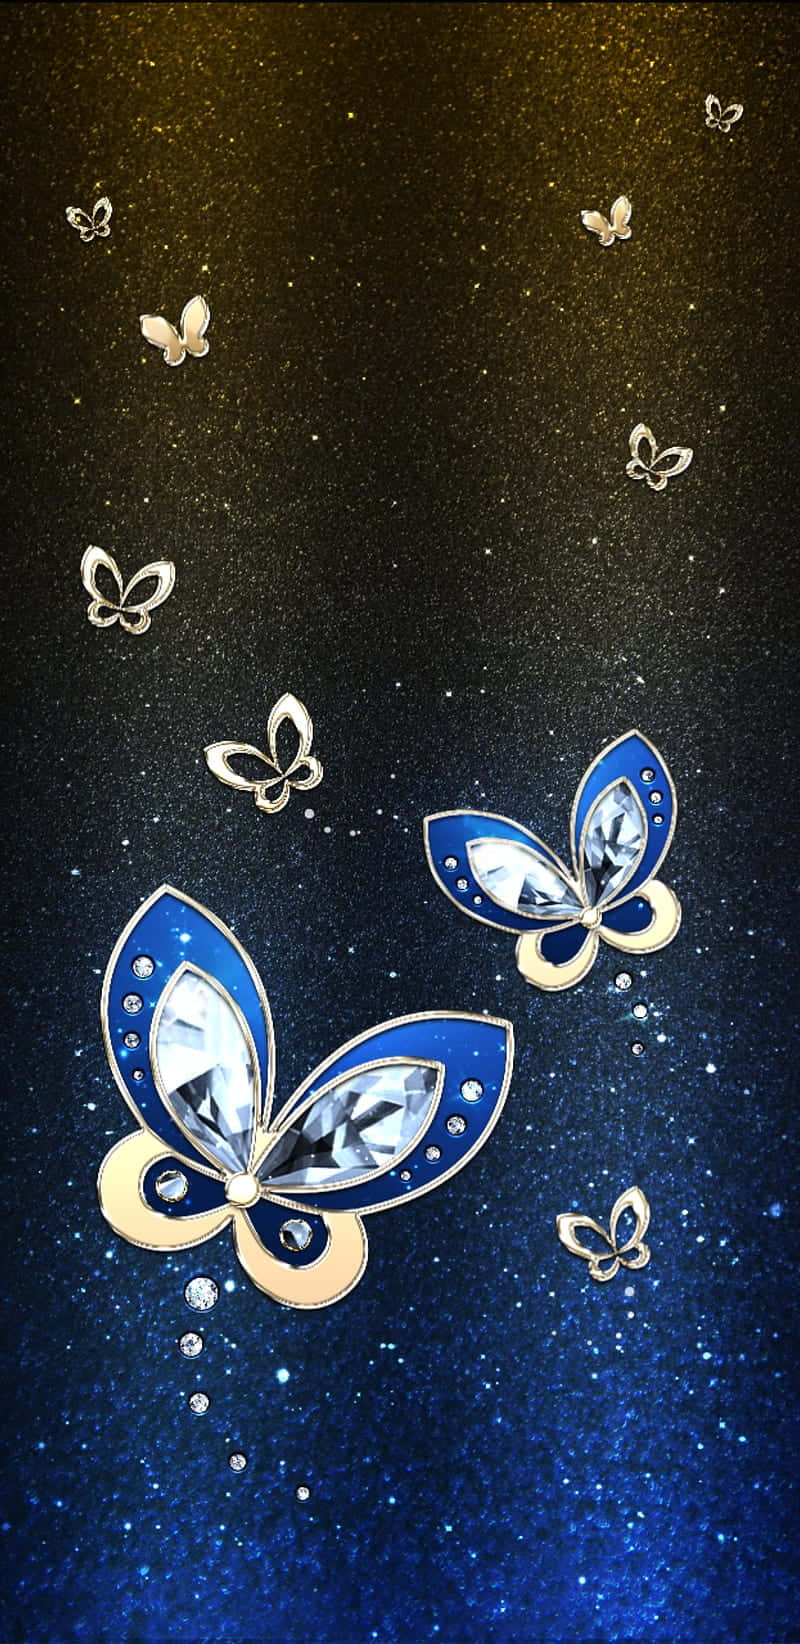 Enlysande Luminescerande Fjäril I En Sagolik Himmel. Wallpaper